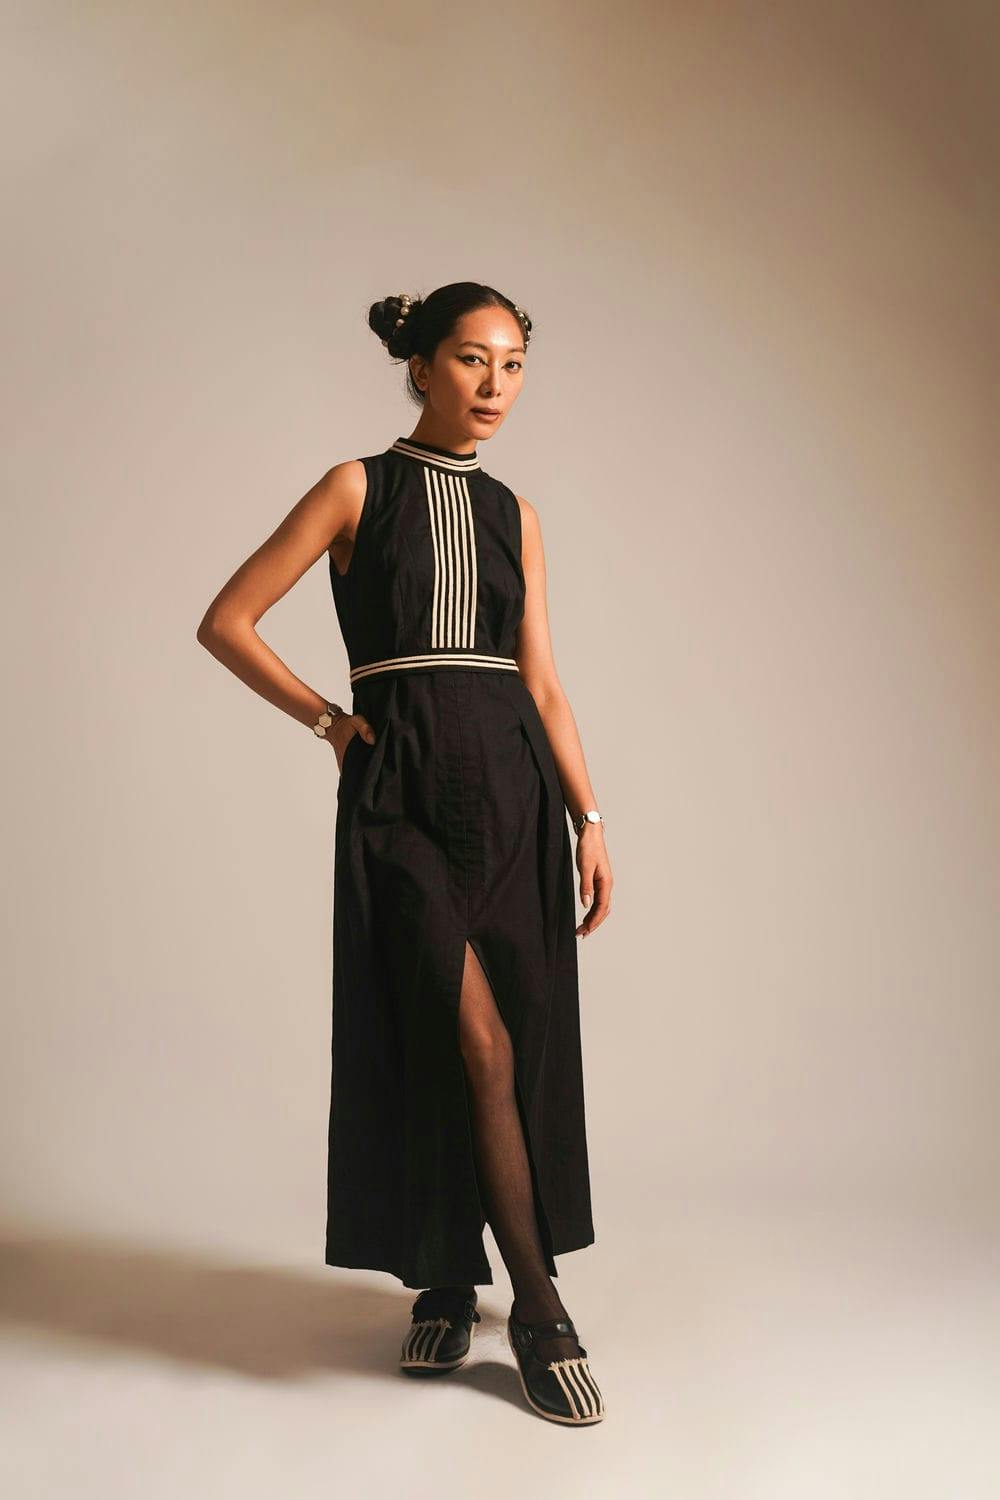 ATBW Ms. Fashionista - Long Dress, a product by ATBW